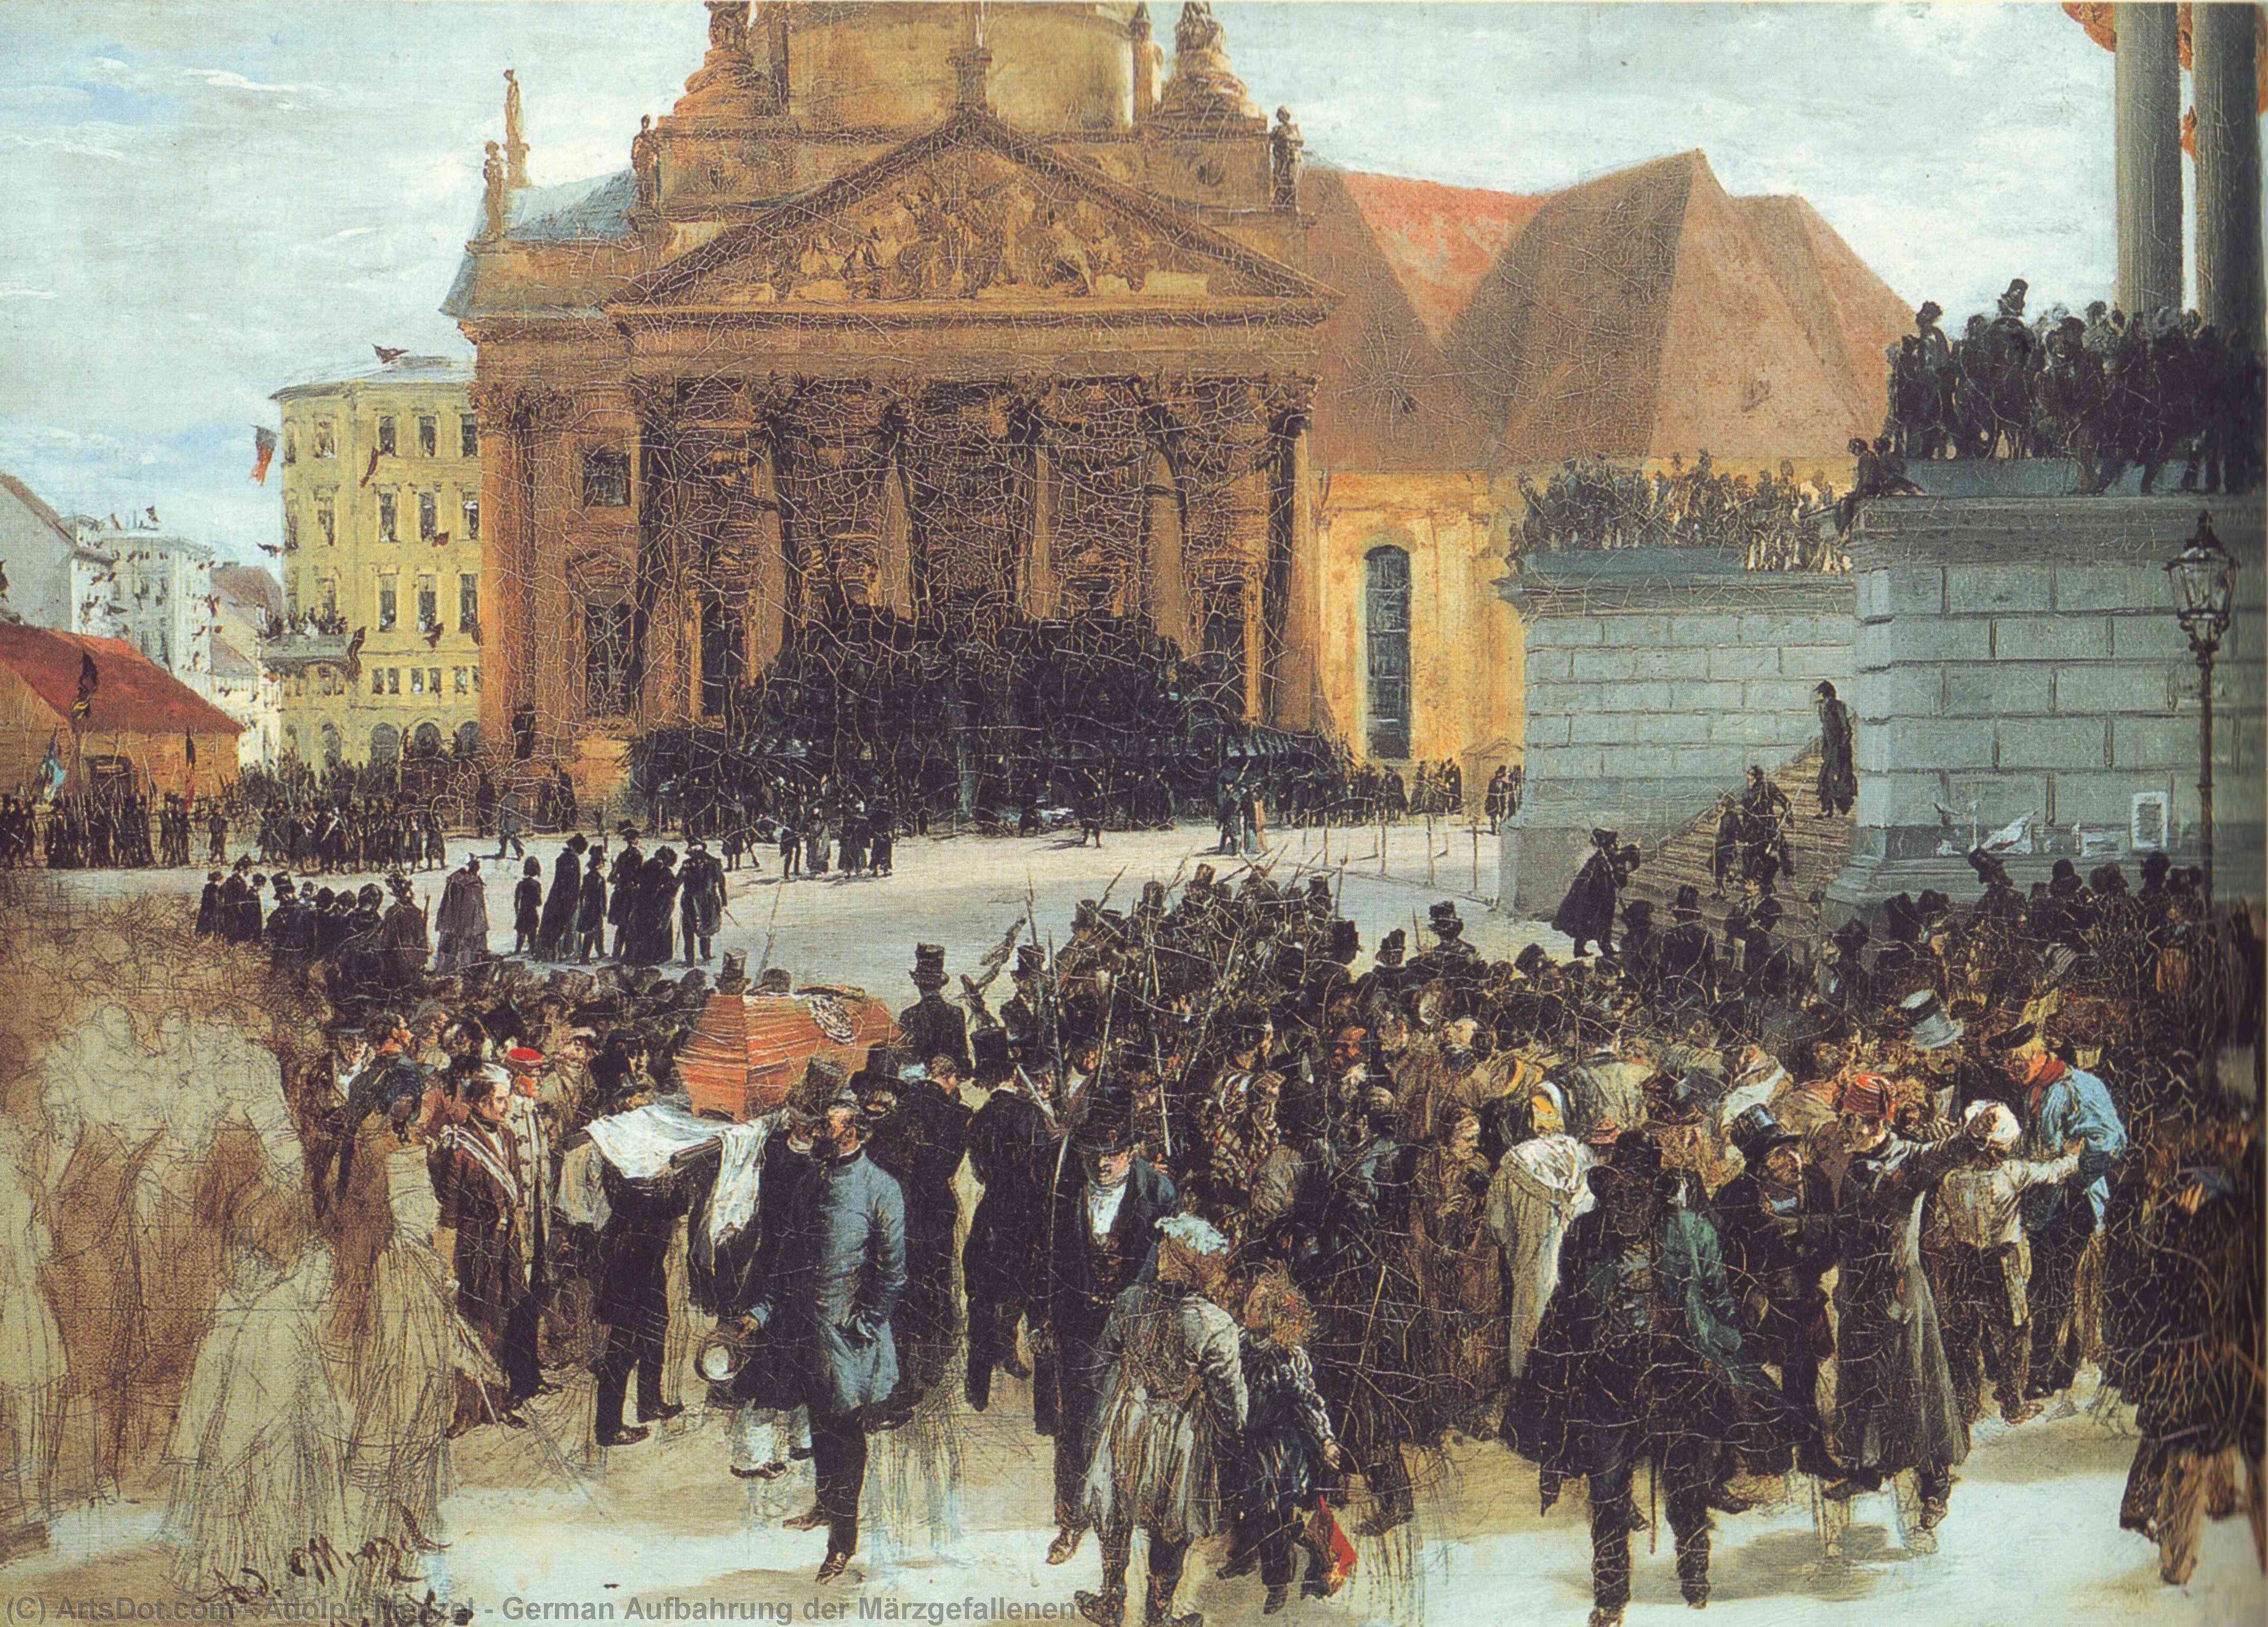 Compra Riproduzioni D'arte Del Museo tedesco Aufbahrung der Märzgefallen, 1848 di Adolph Menzel | ArtsDot.com